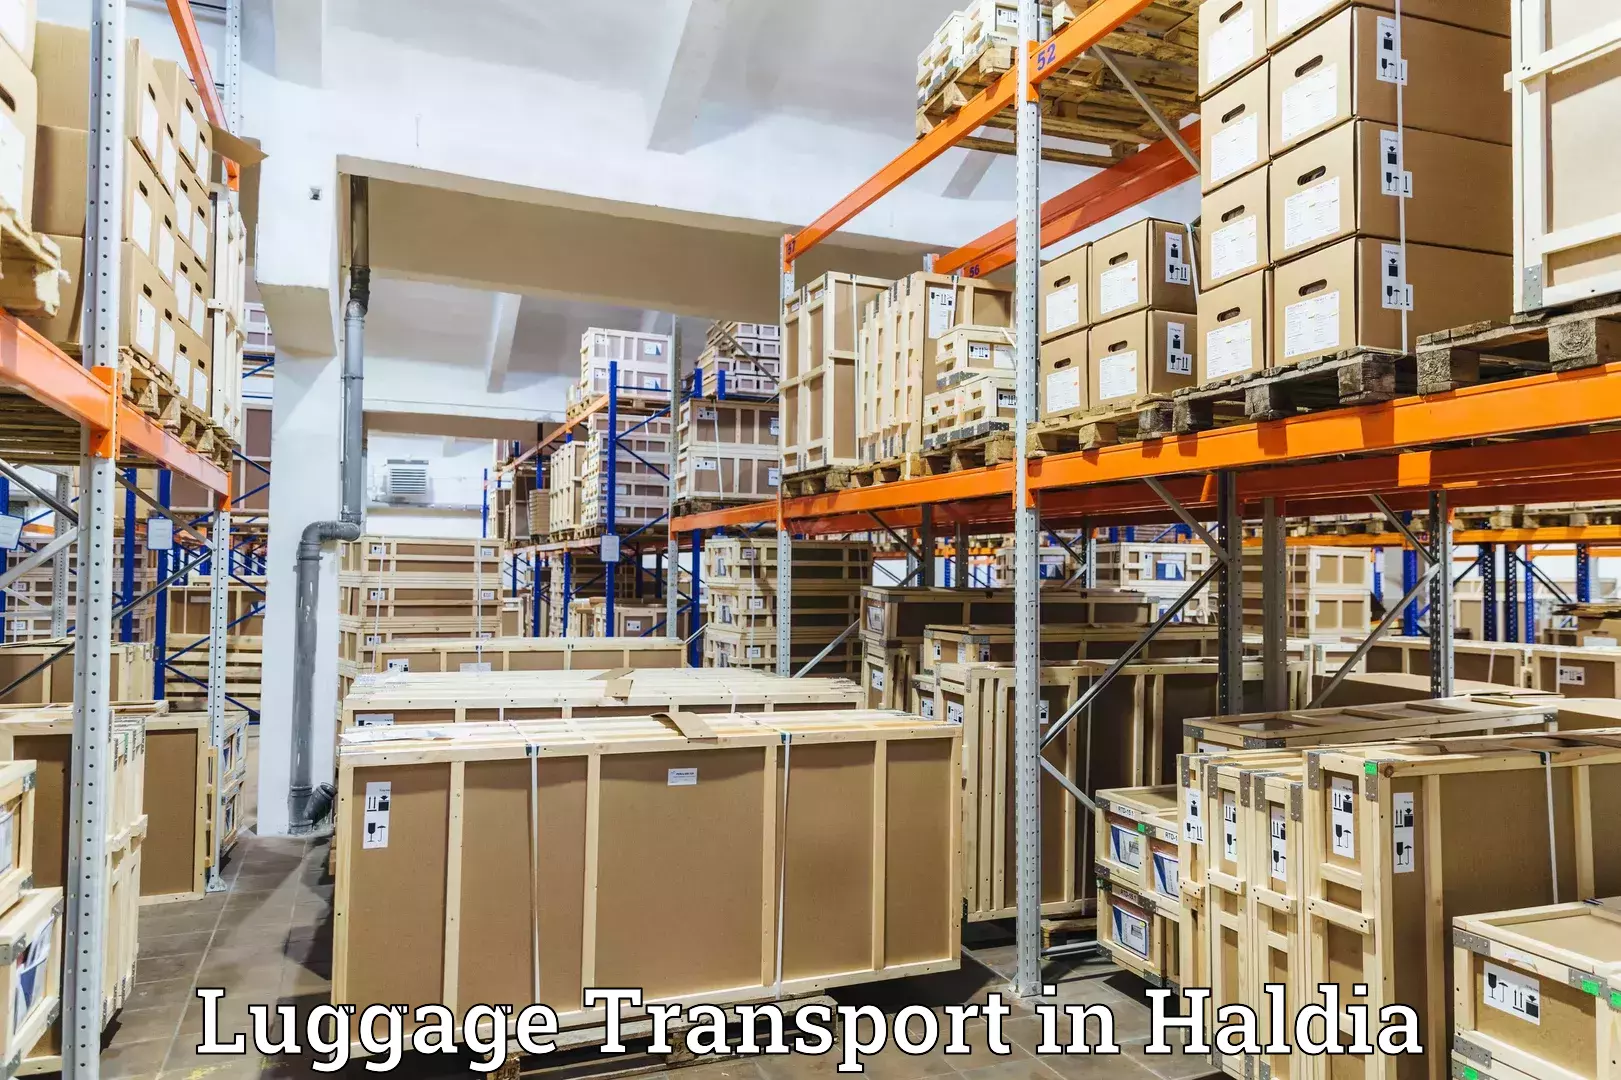 Luggage transport consulting in Haldia